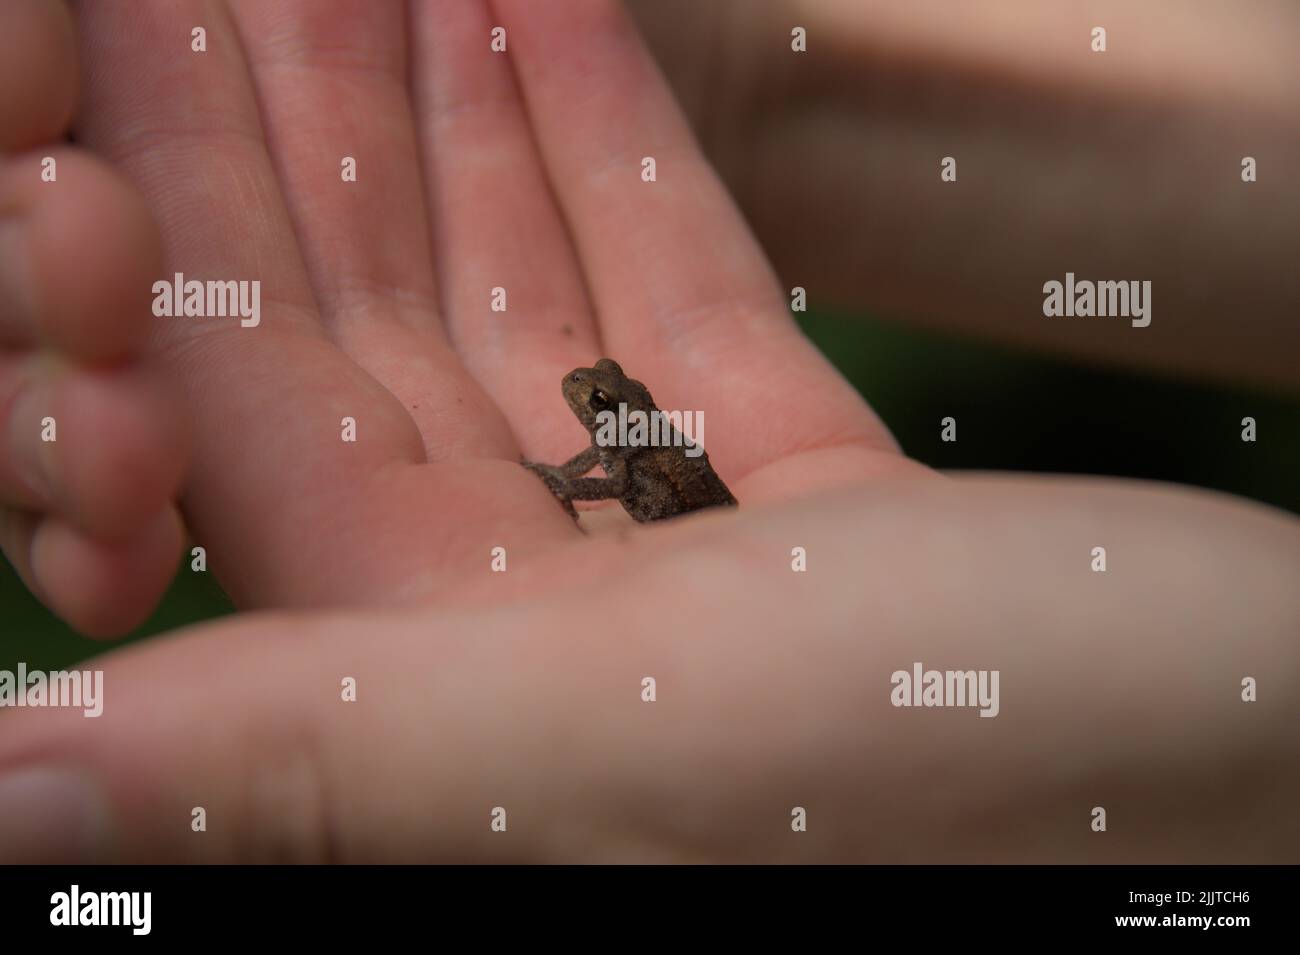 Eine Nahaufnahme einer kleinen Kröte in einer Handfläche Stockfoto